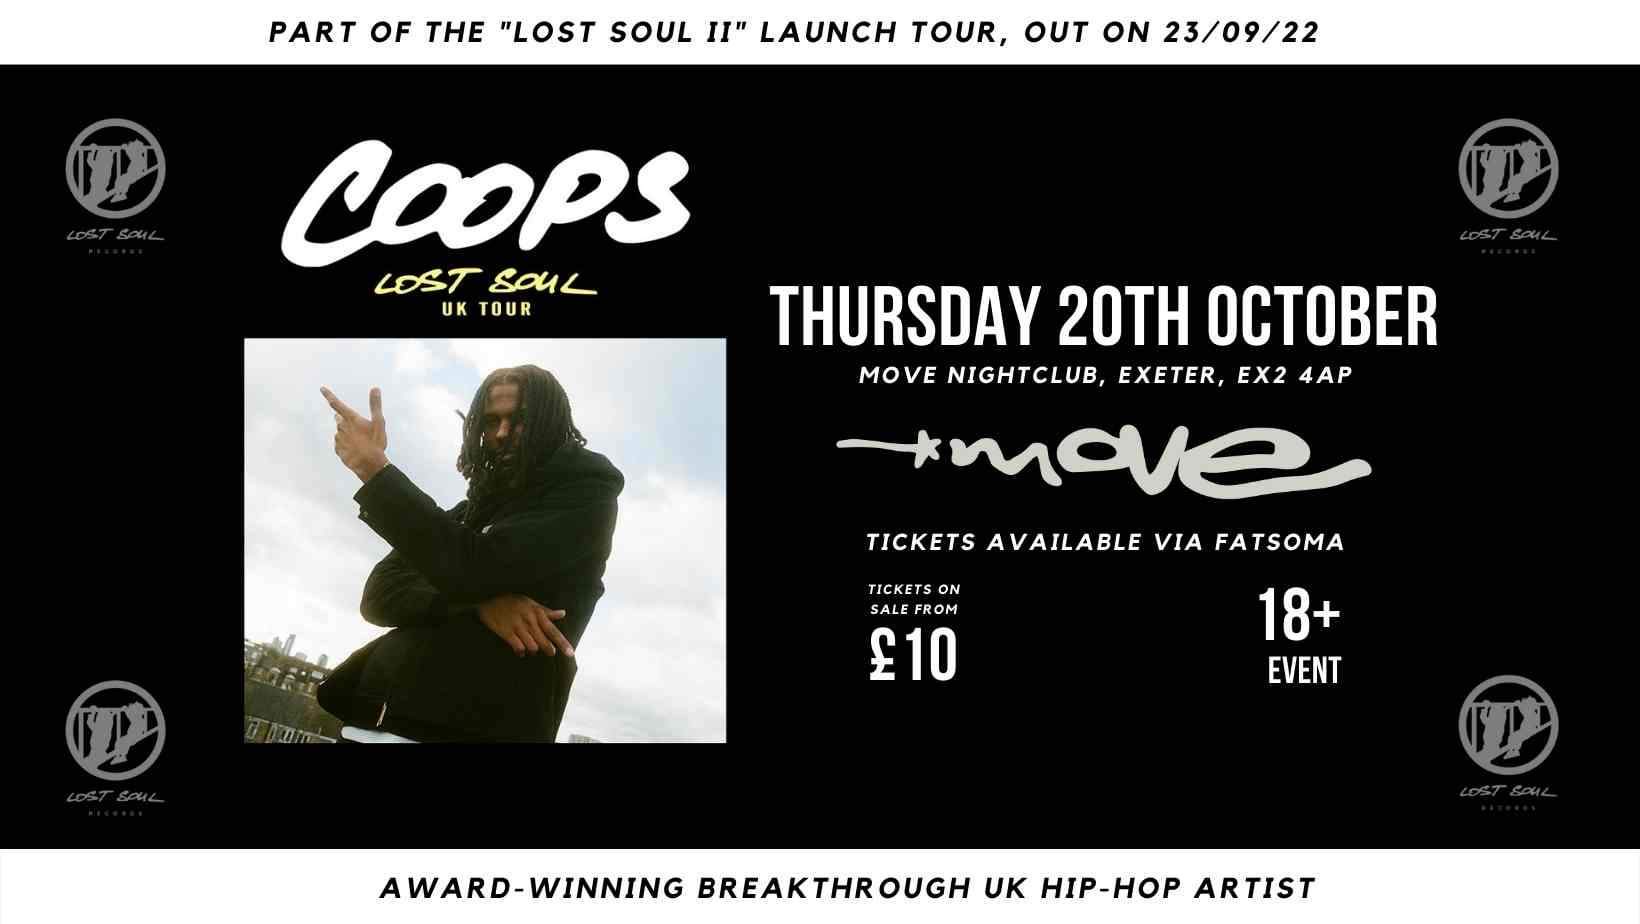 Coops- lost soul 2 album tour